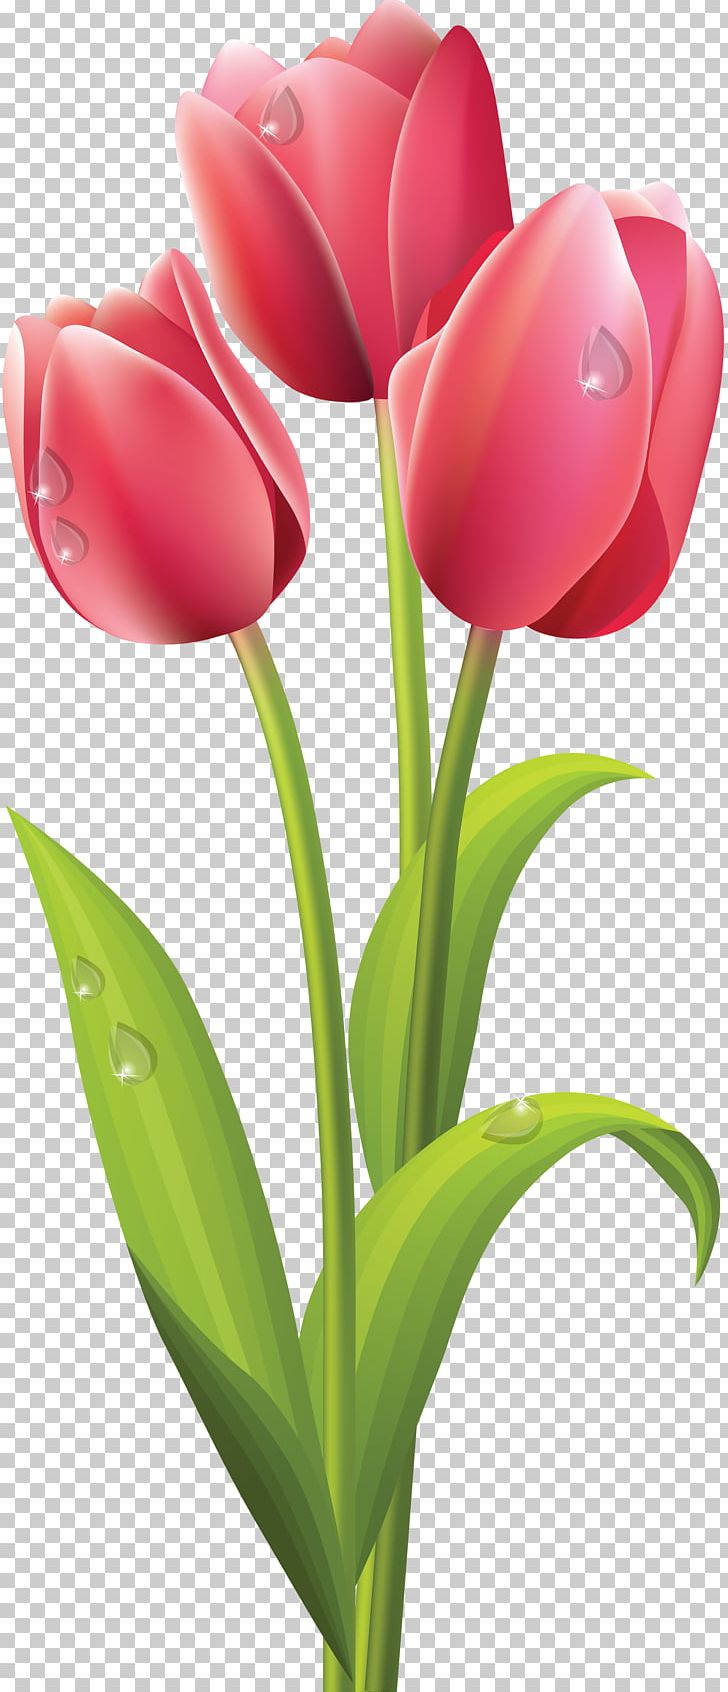 Tulip Flower Bouquet PNG, Clipart, Bud, Clip Art, Color, Cut Flowers, Floral Design Free PNG Download